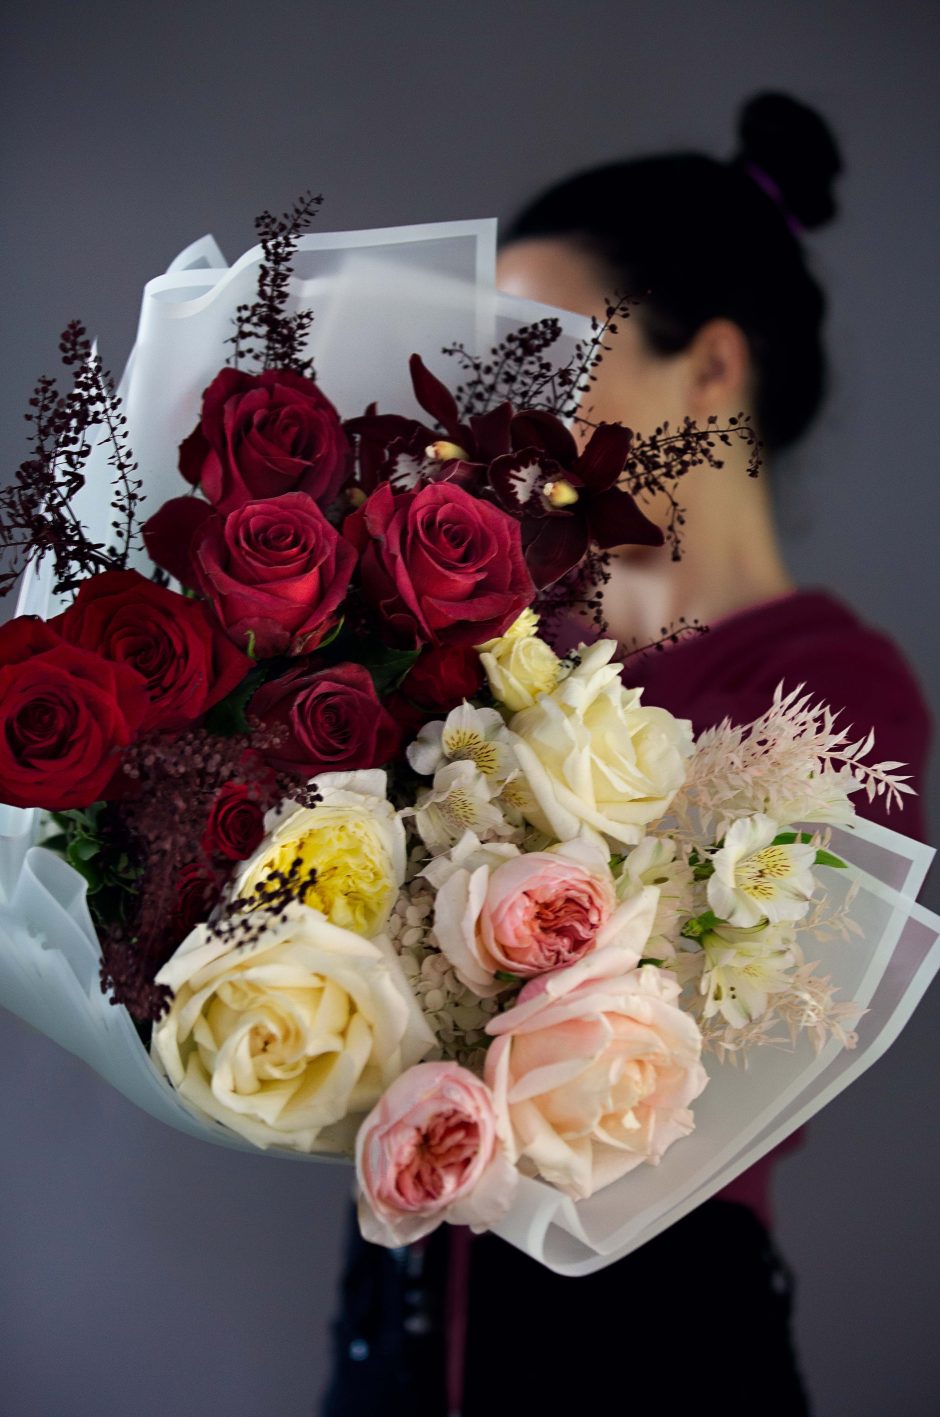 Cream and Red Roses, Merlot Romance - Cream and red premium roses